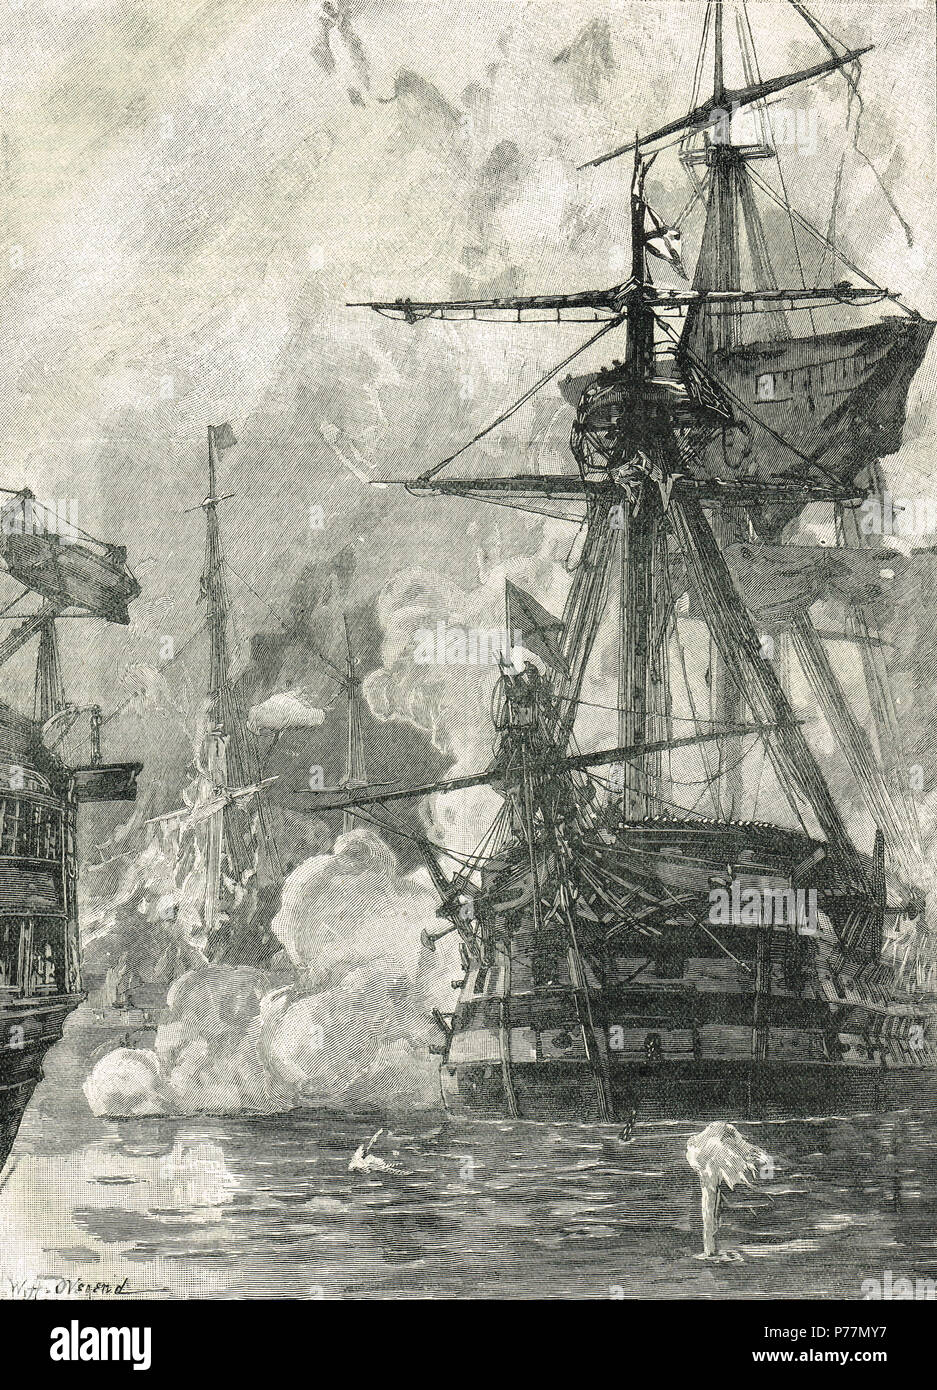 Russischen Angriff auf den Hafen von Sinop, Türkei, 30. November 1853. Die Schlacht von Sinop, oder die Schlacht von Sinope. Eine russische Marine Sieg über das Osmanische Reich während des Krimkrieges das war ein beitragender Faktor zu bringen Frankreich und Großbritannien in den Konflikt. Stockfoto